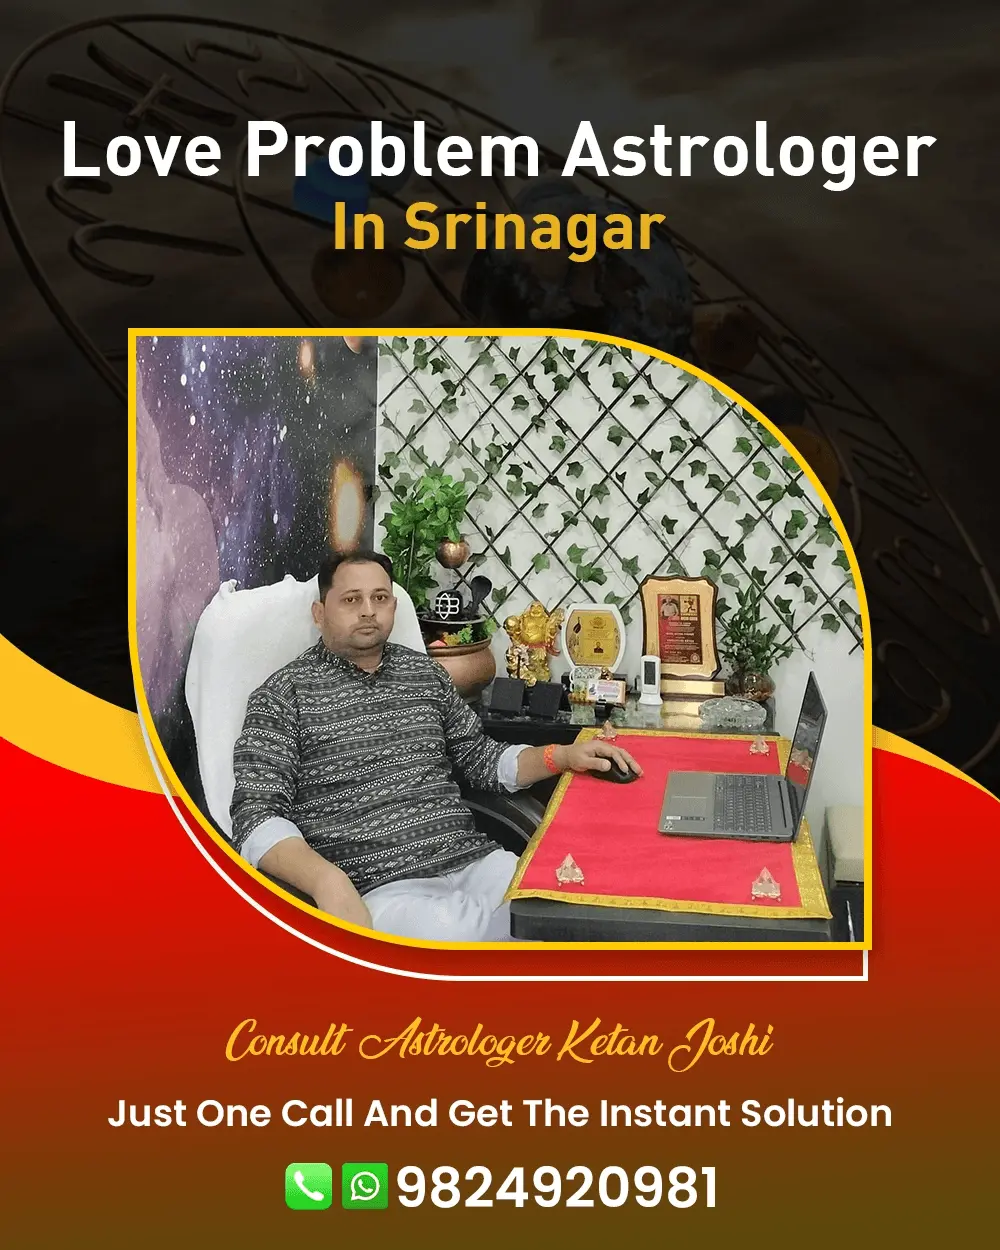 Love Problem Astrologer In Srinagar